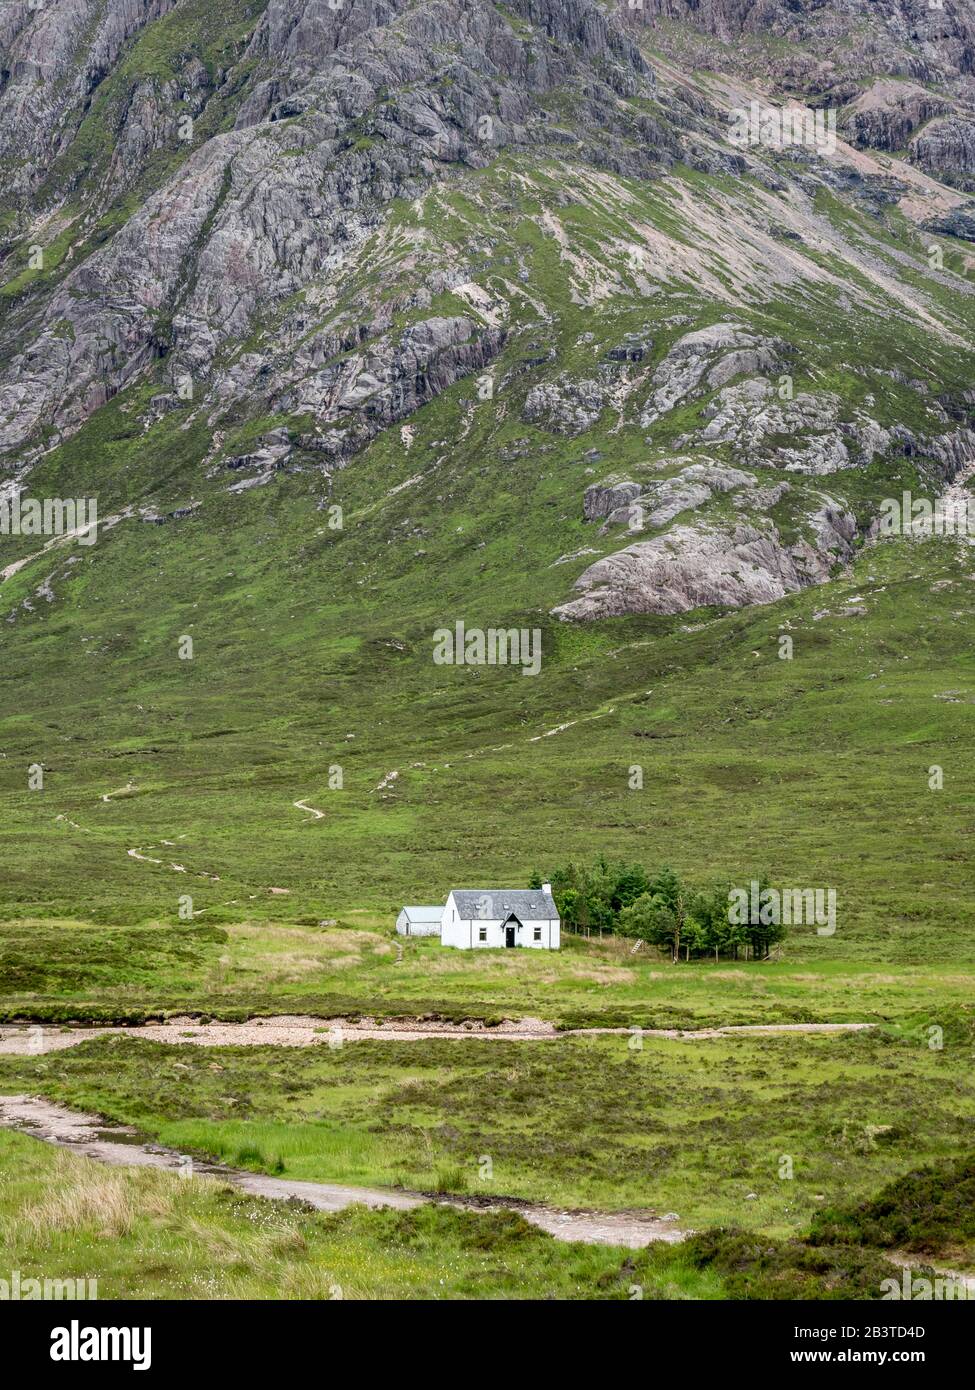 Cottage scozzese crofters. Il paesaggio aspro delle Monti Grampian con un cottage in stile "crofters" che fornisce una scala nelle Highlands scozzesi. Foto Stock